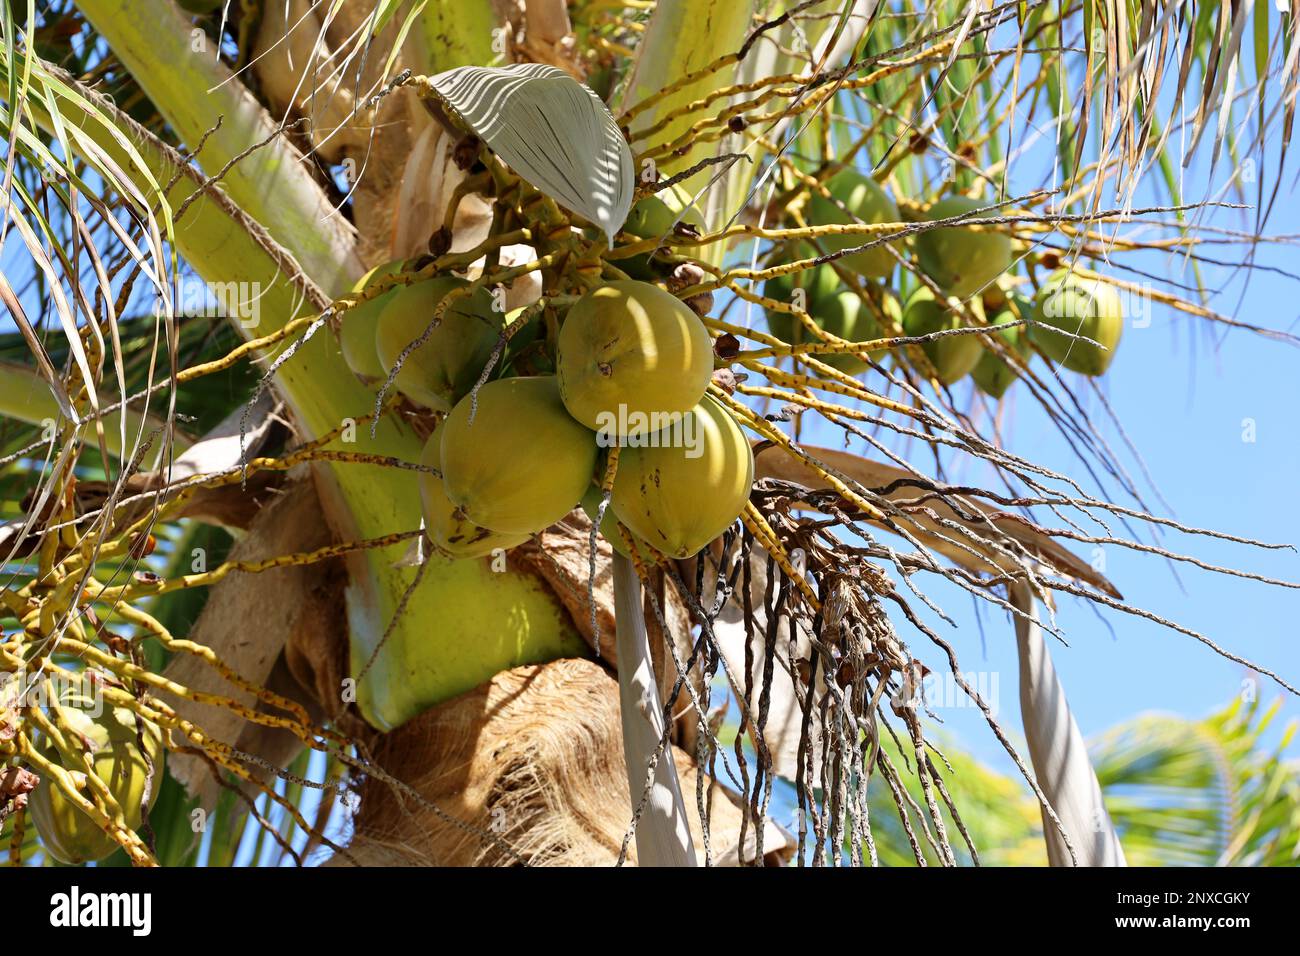 Cocotier avec coco sur un fond de ciel. Arbre sur une plage tropicale Banque D'Images